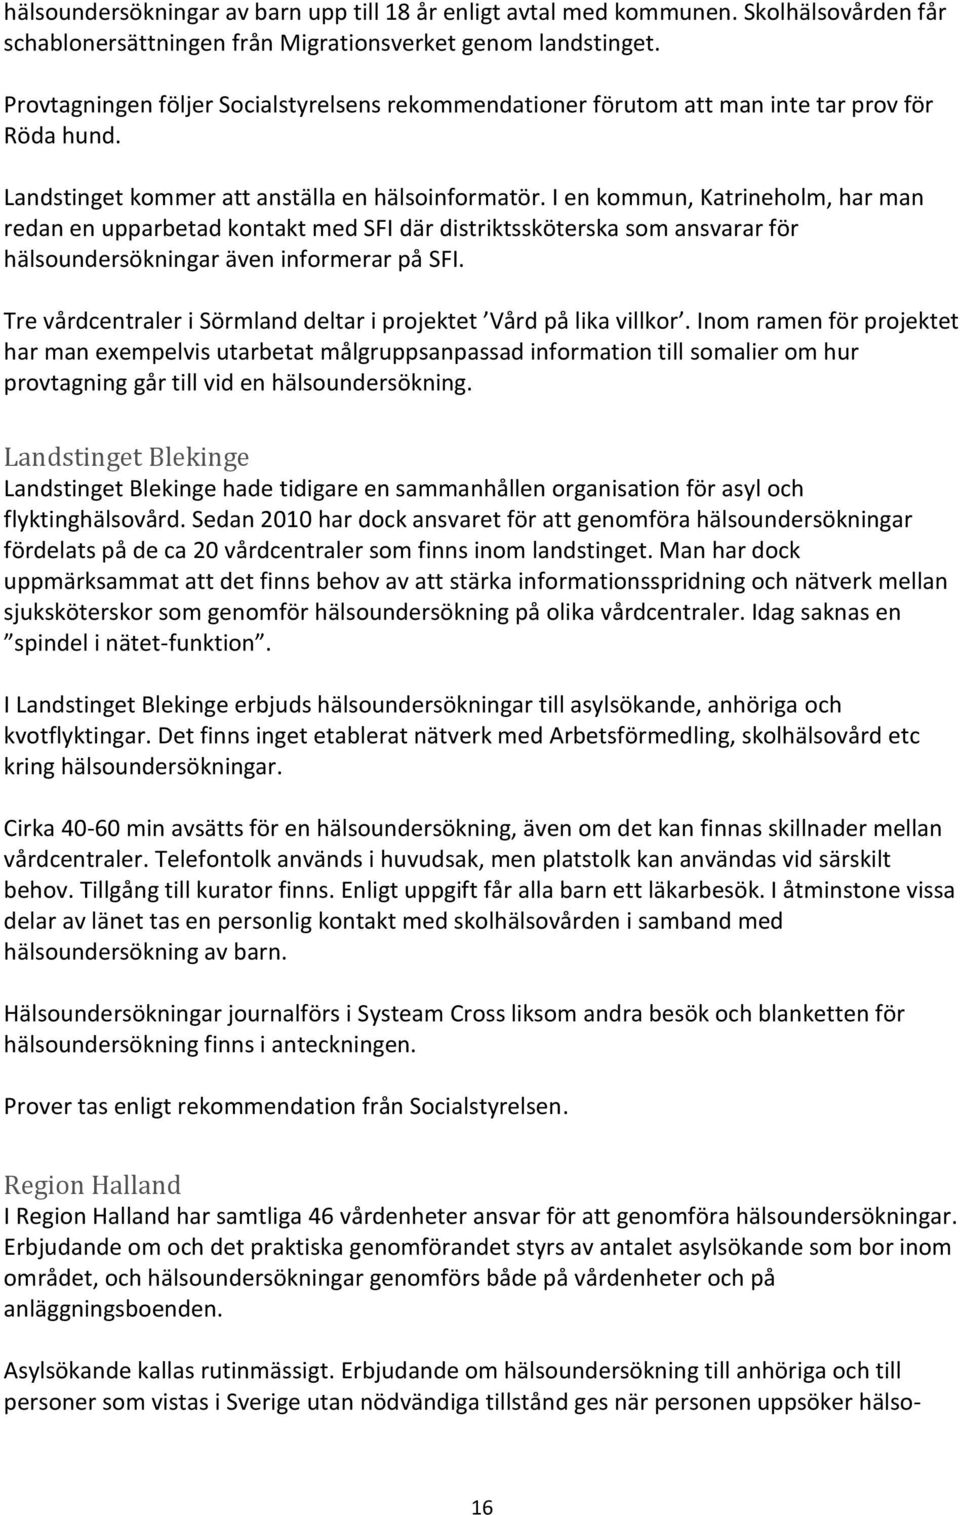 I en kommun, Katrineholm, har man redan en upparbetad kontakt med SFI där distriktssköterska som ansvarar för hälsoundersökningar även informerar på SFI.